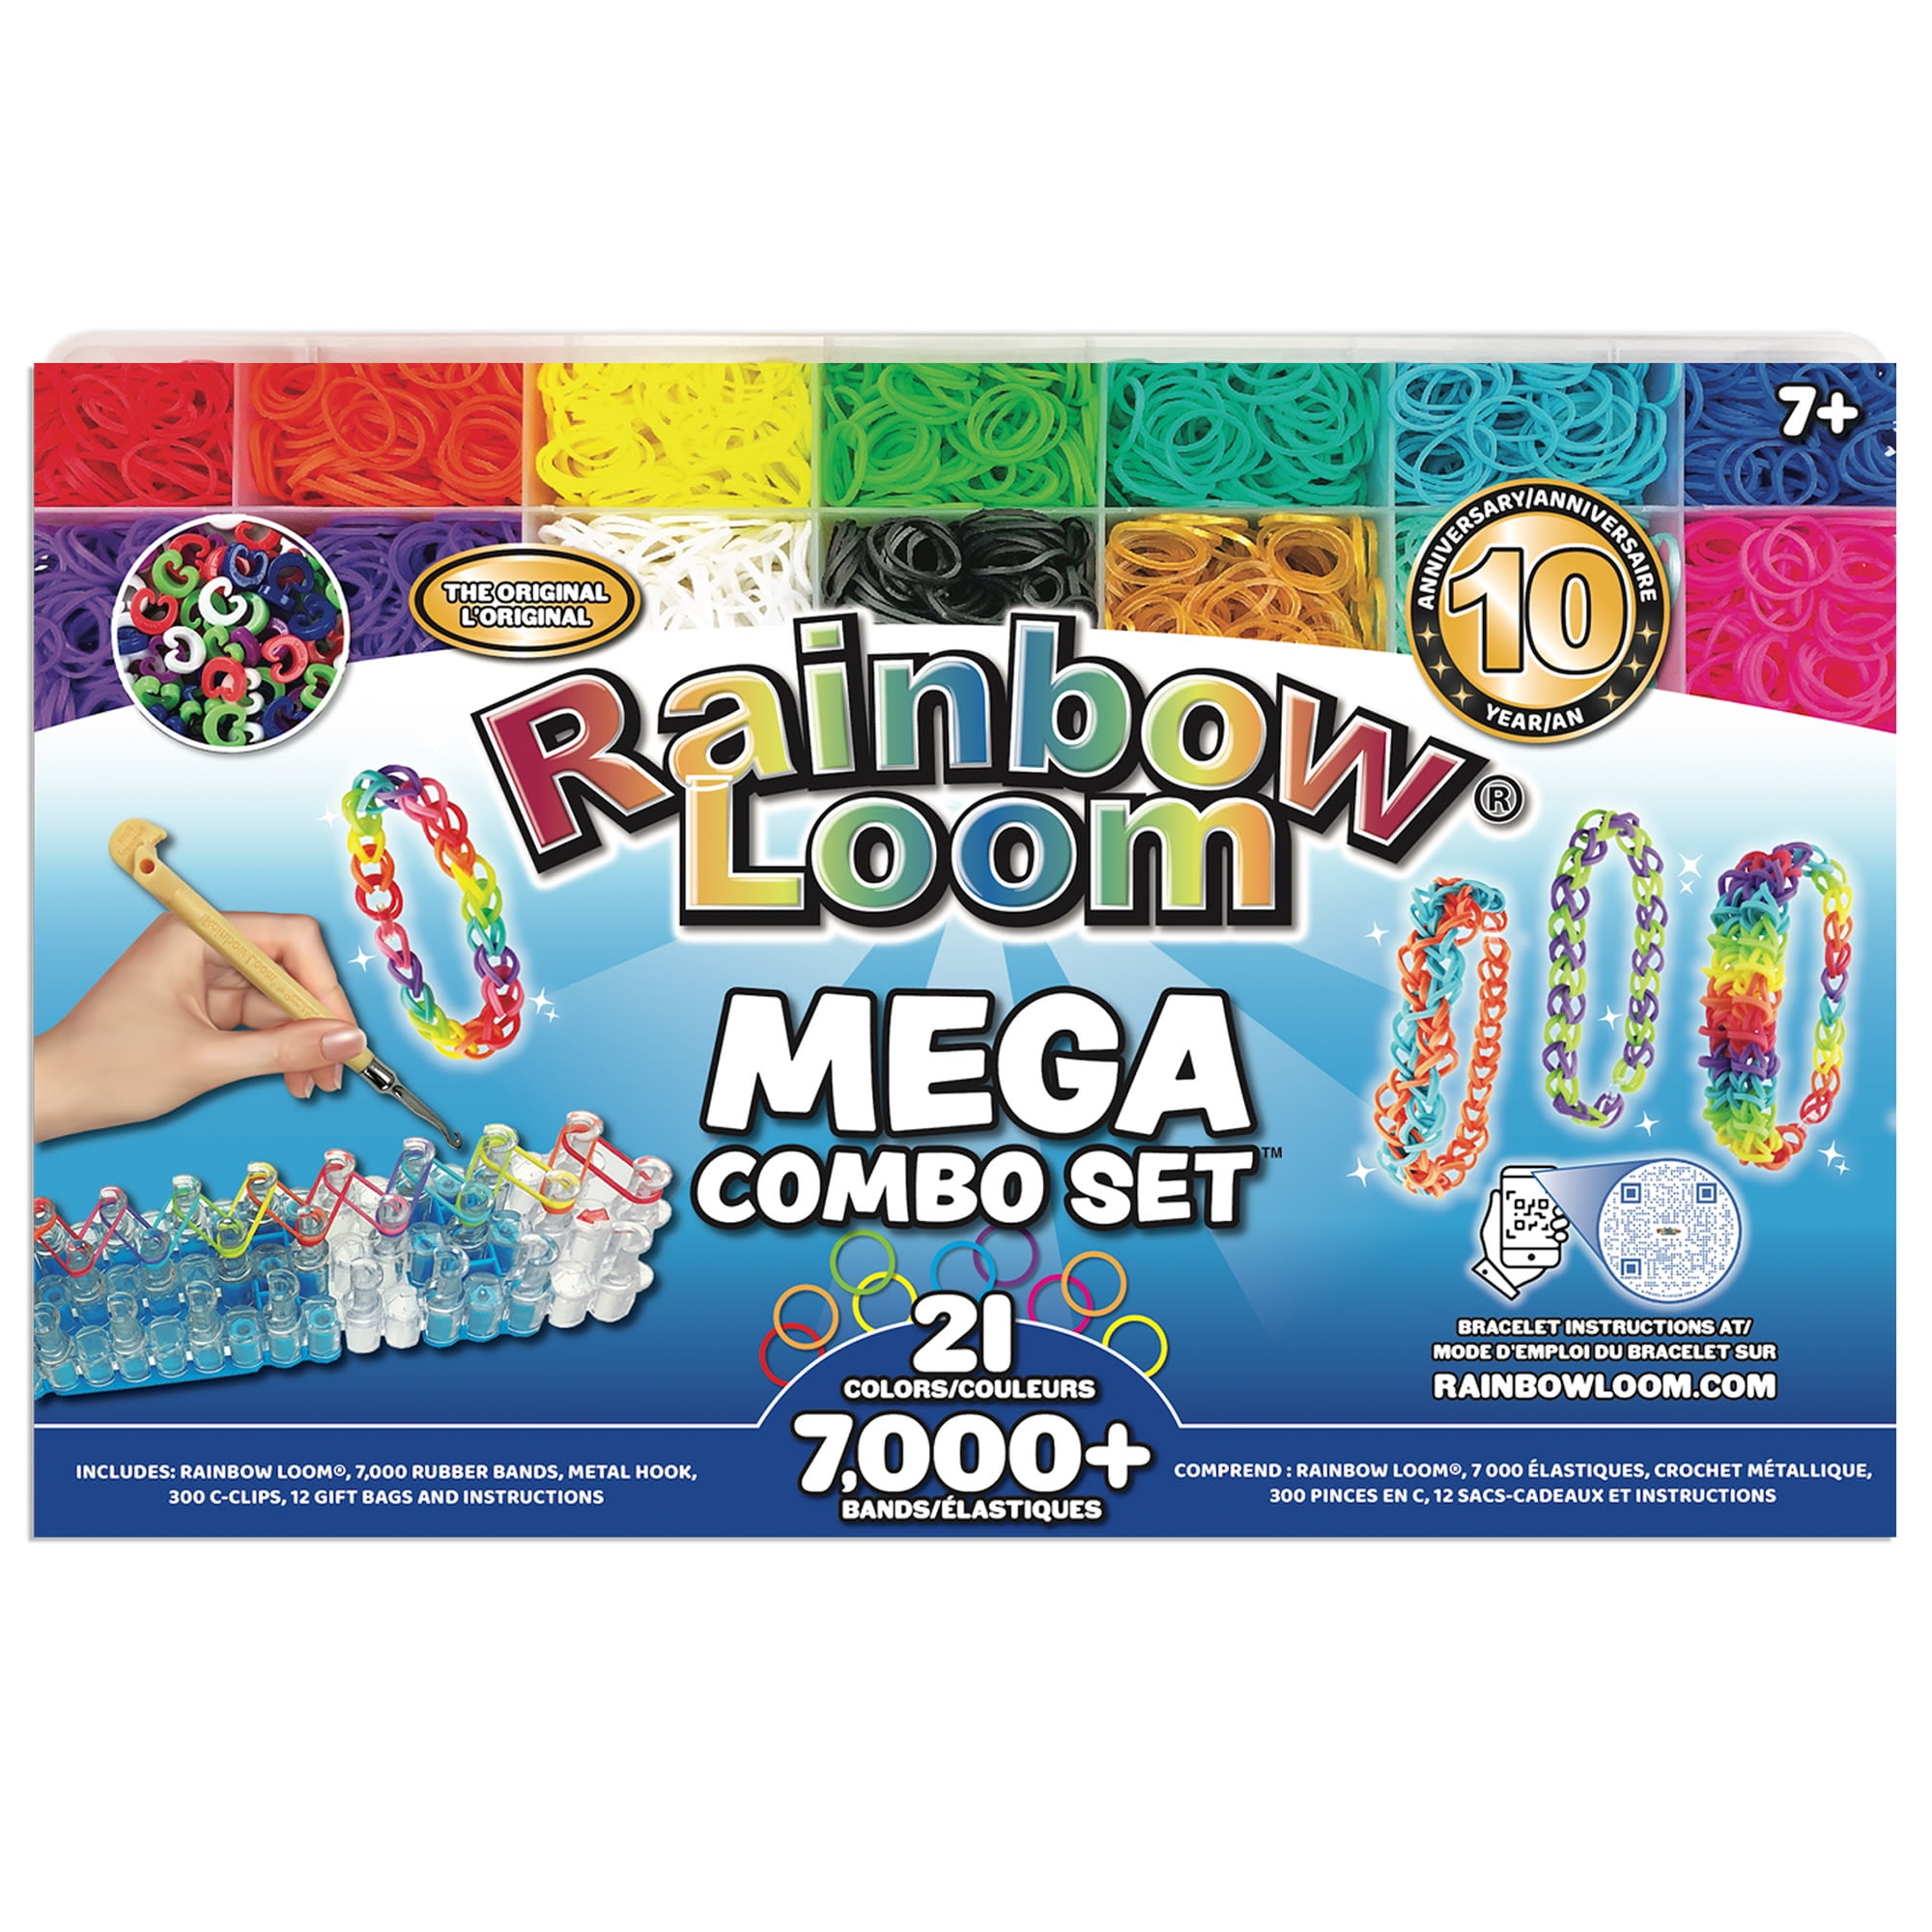 NEW* Rainbow Loom Mega Combo Kit Review! 